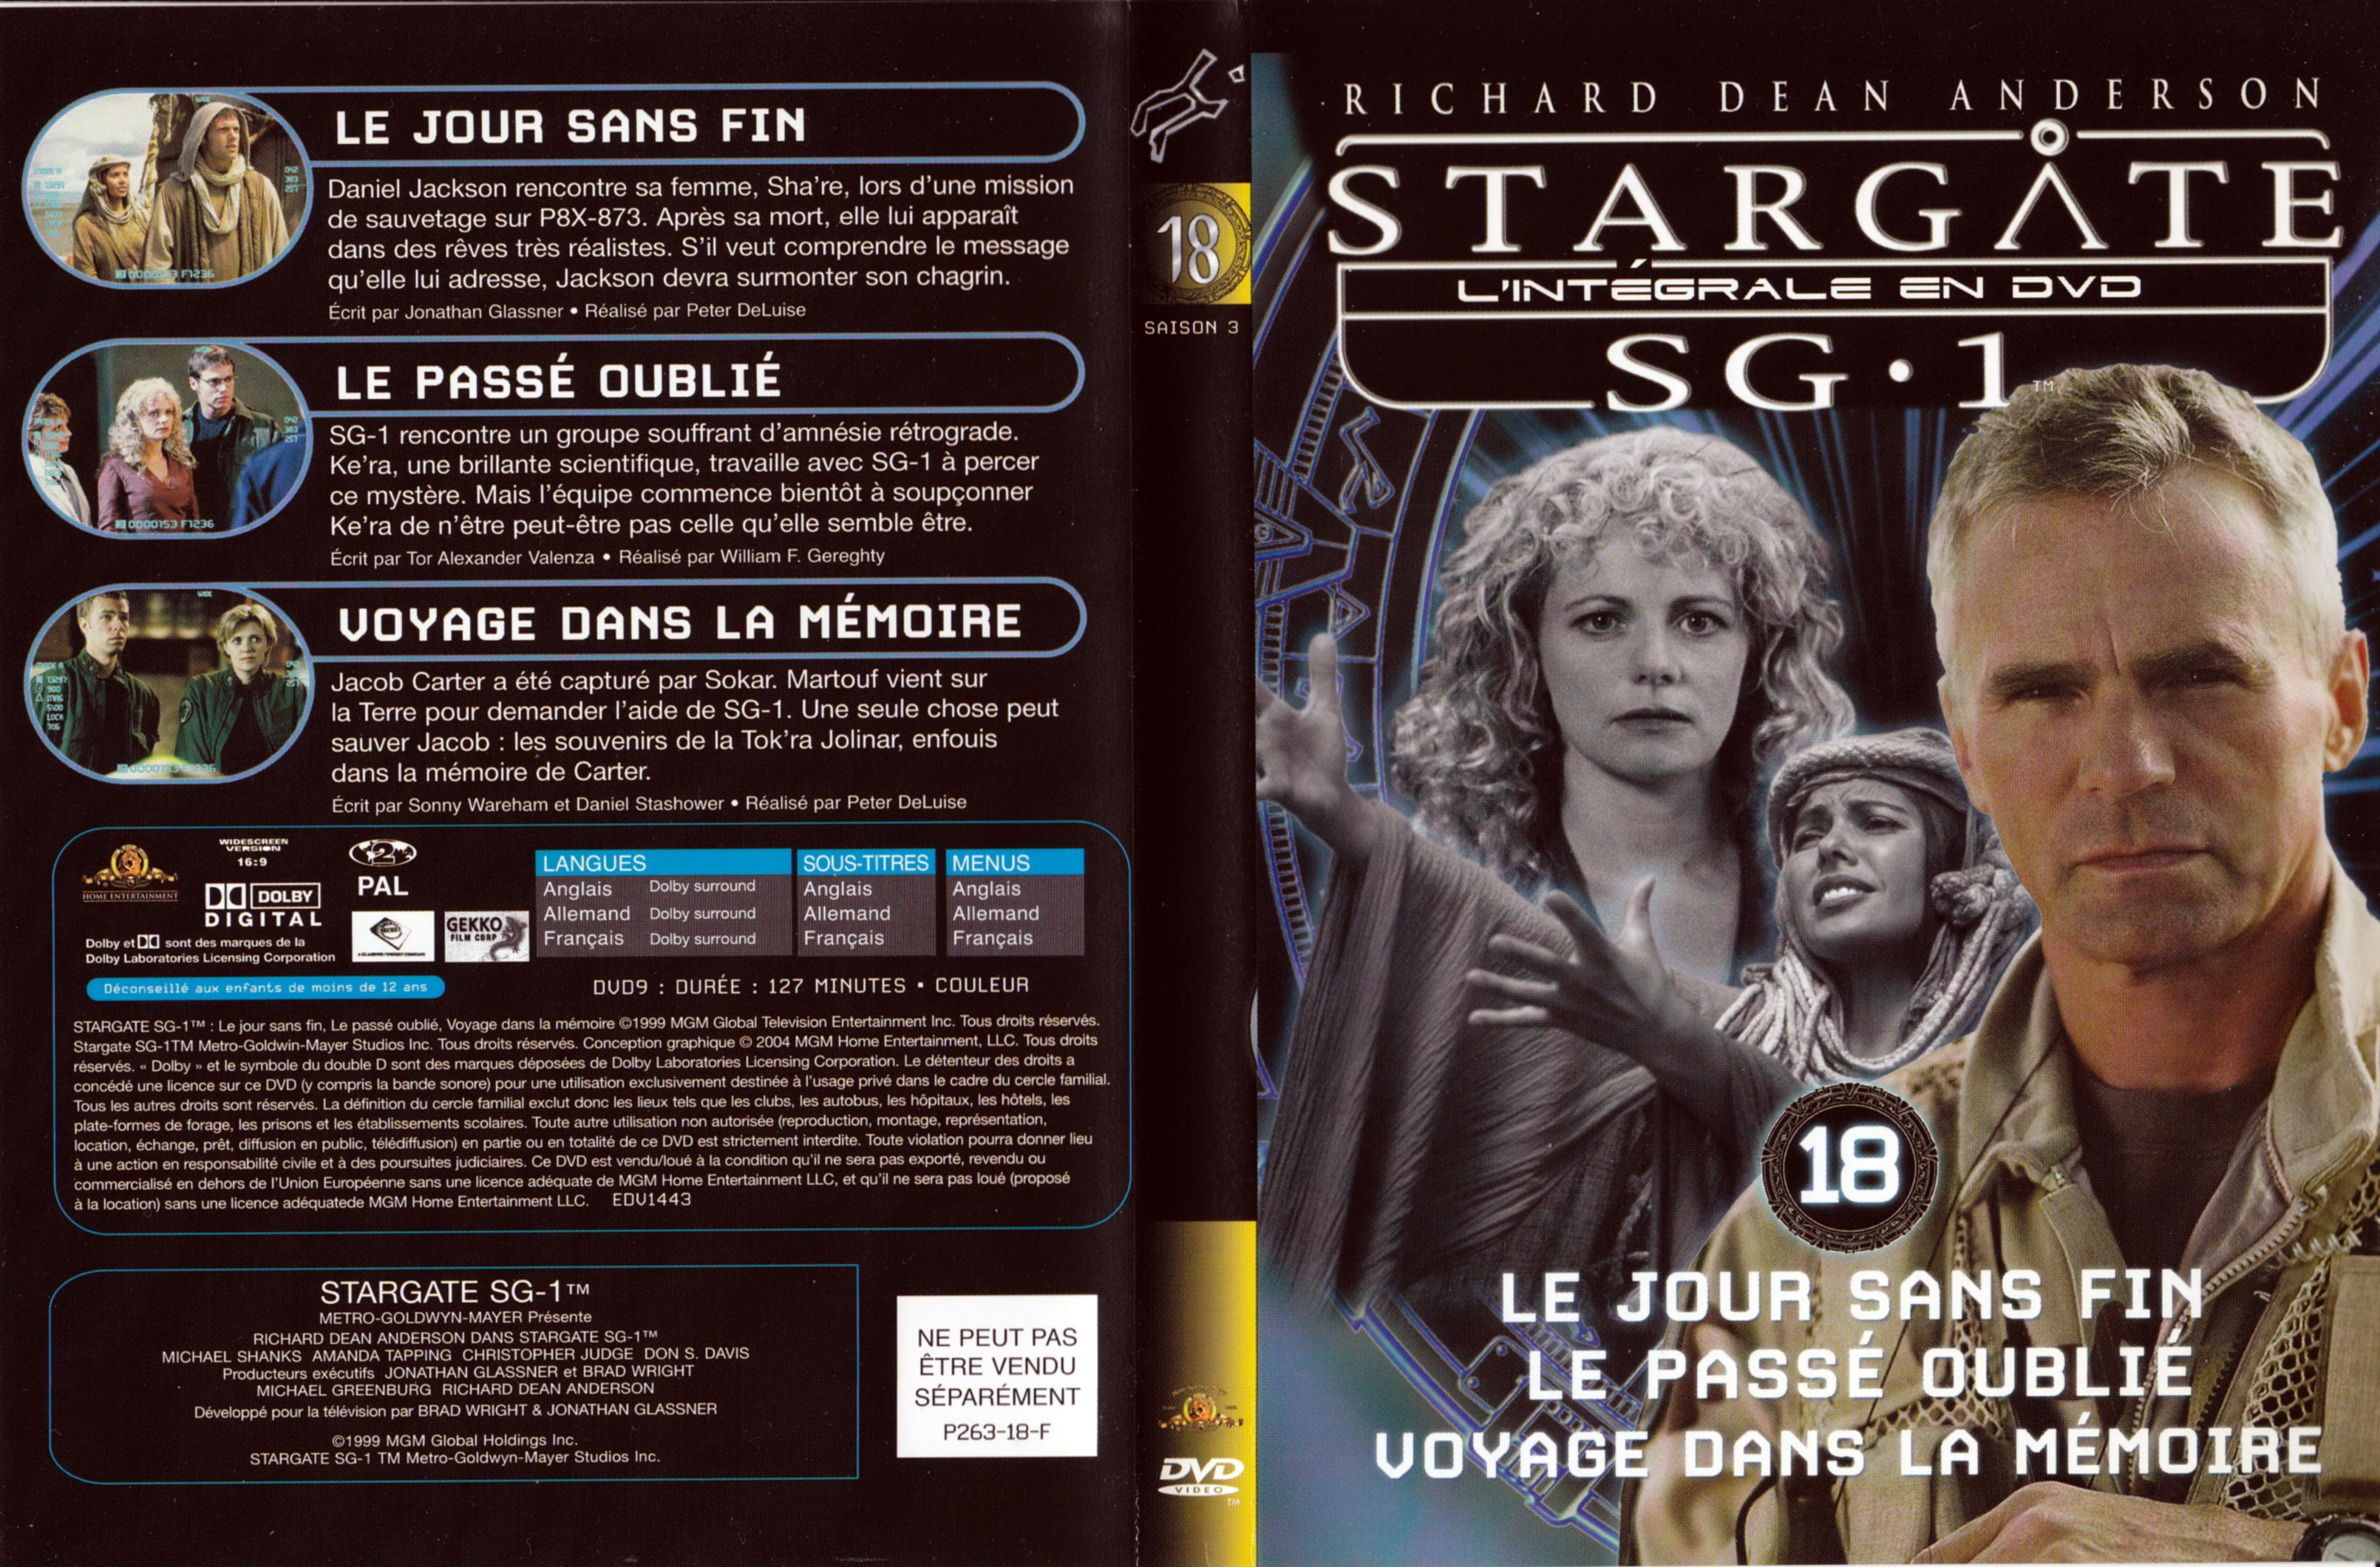 Jaquette DVD Stargate SG1 Intgrale Saison 3 vol 18